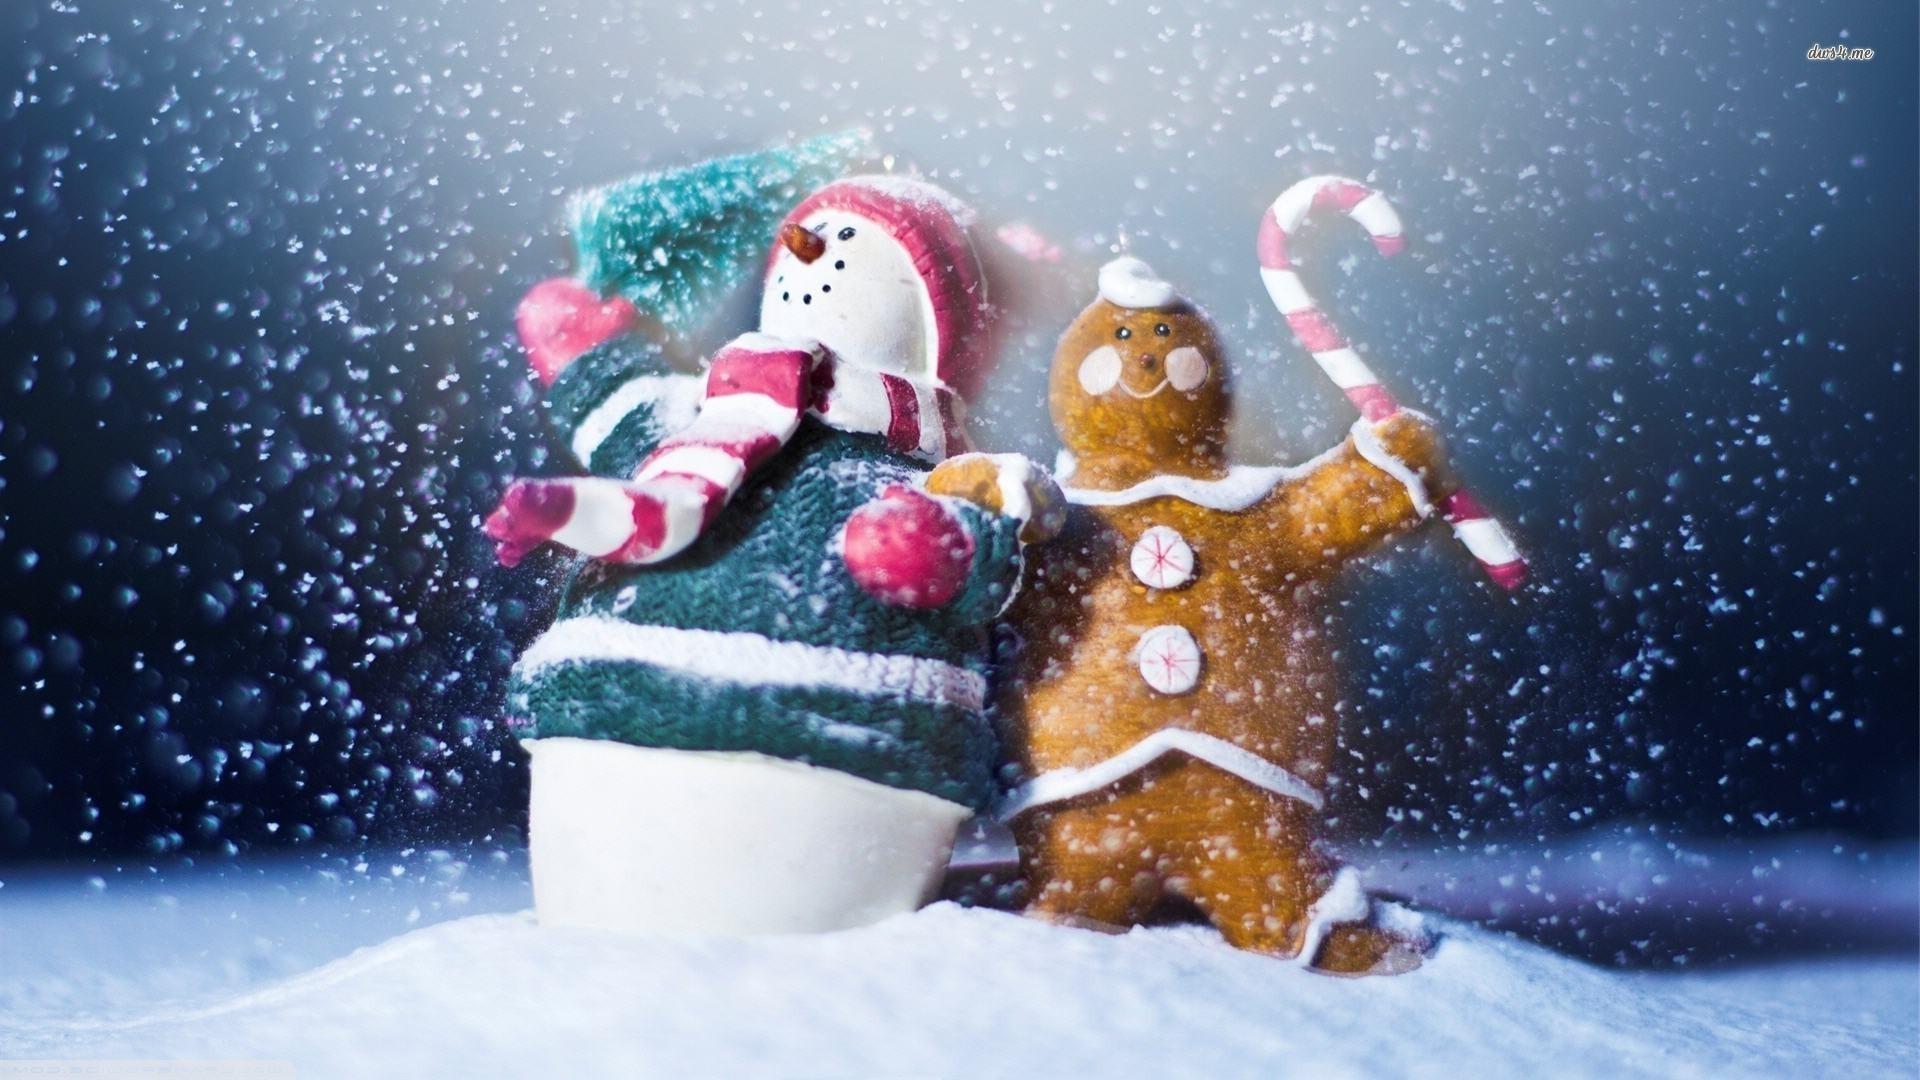 Snowman and gingerbread man wallpaper wallpaper